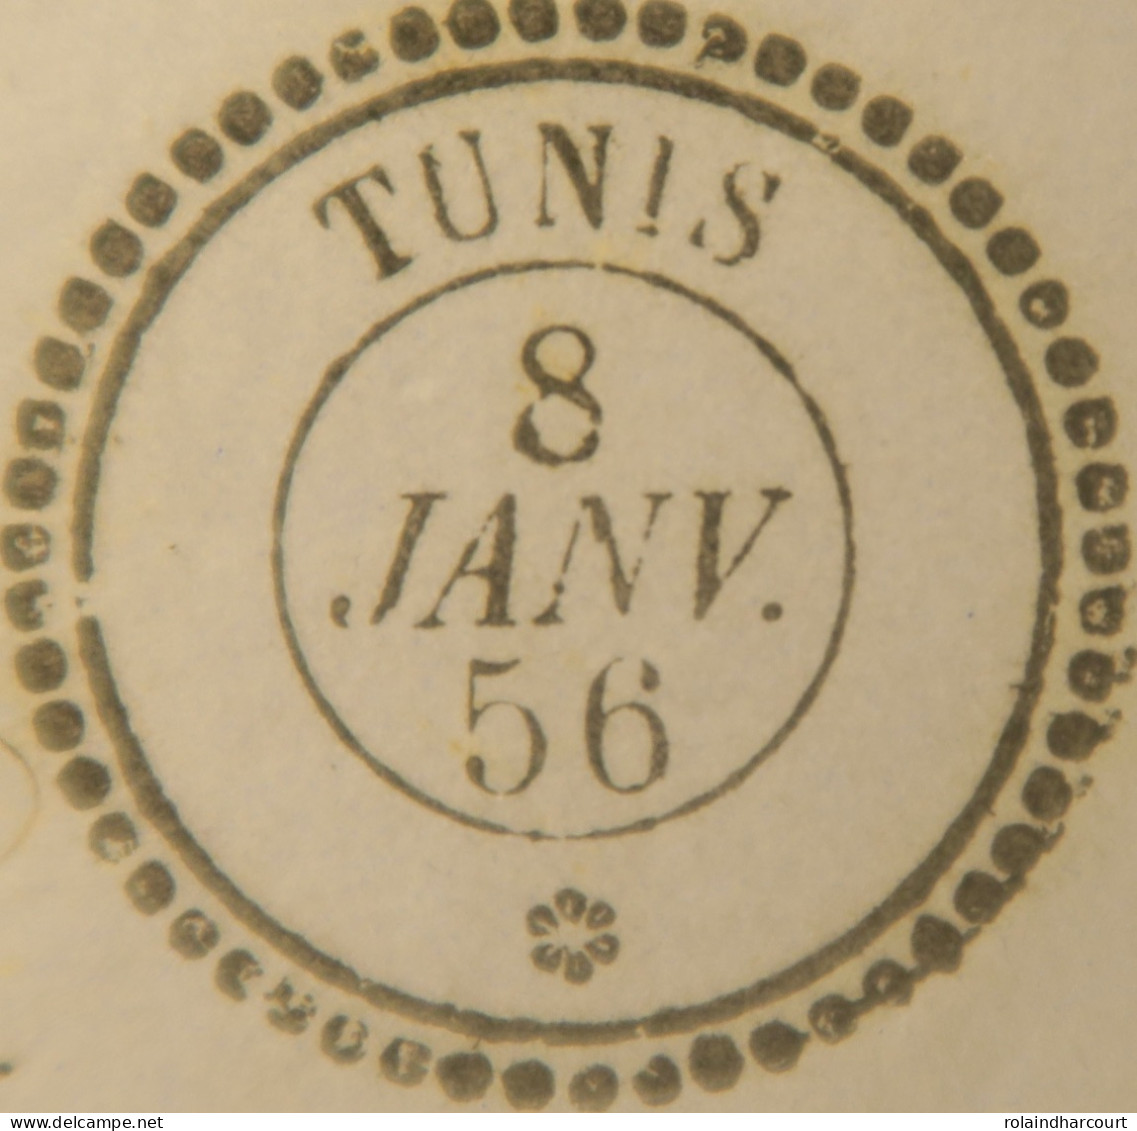 A550 - POSTE MARITIME - LETTRE (LAC) TUNIS (TUNISIE) 8 JANVIER 1856 à MARSEILLE (via BÔNE) - Schiffspost